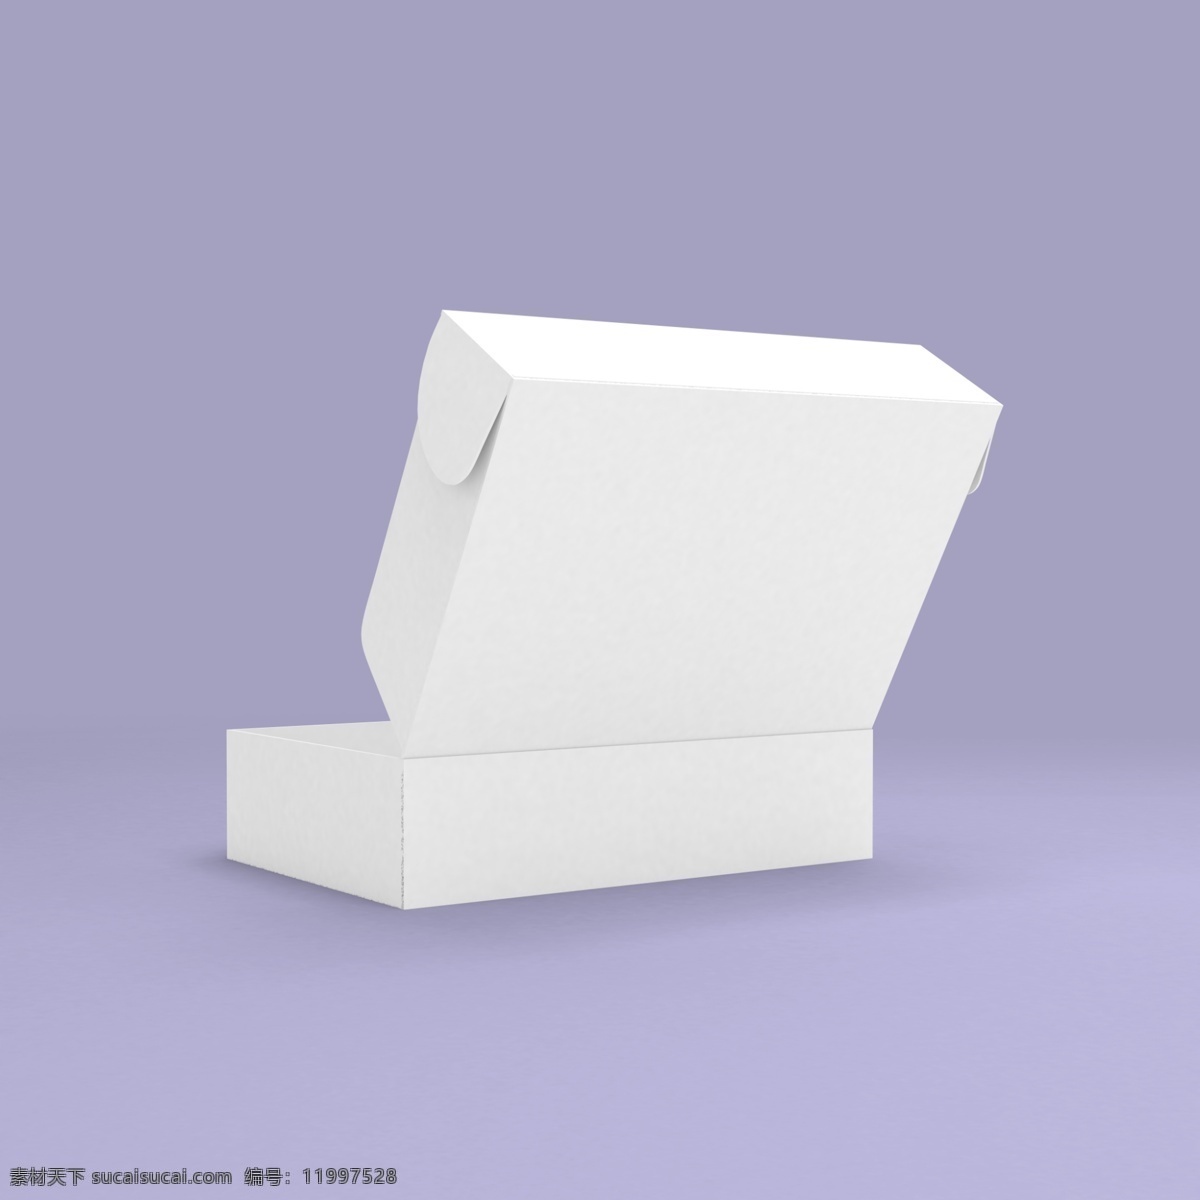 白色飞机盒 包装图片 白色 飞机盒 包装 模型 分层 文件 小小鸟